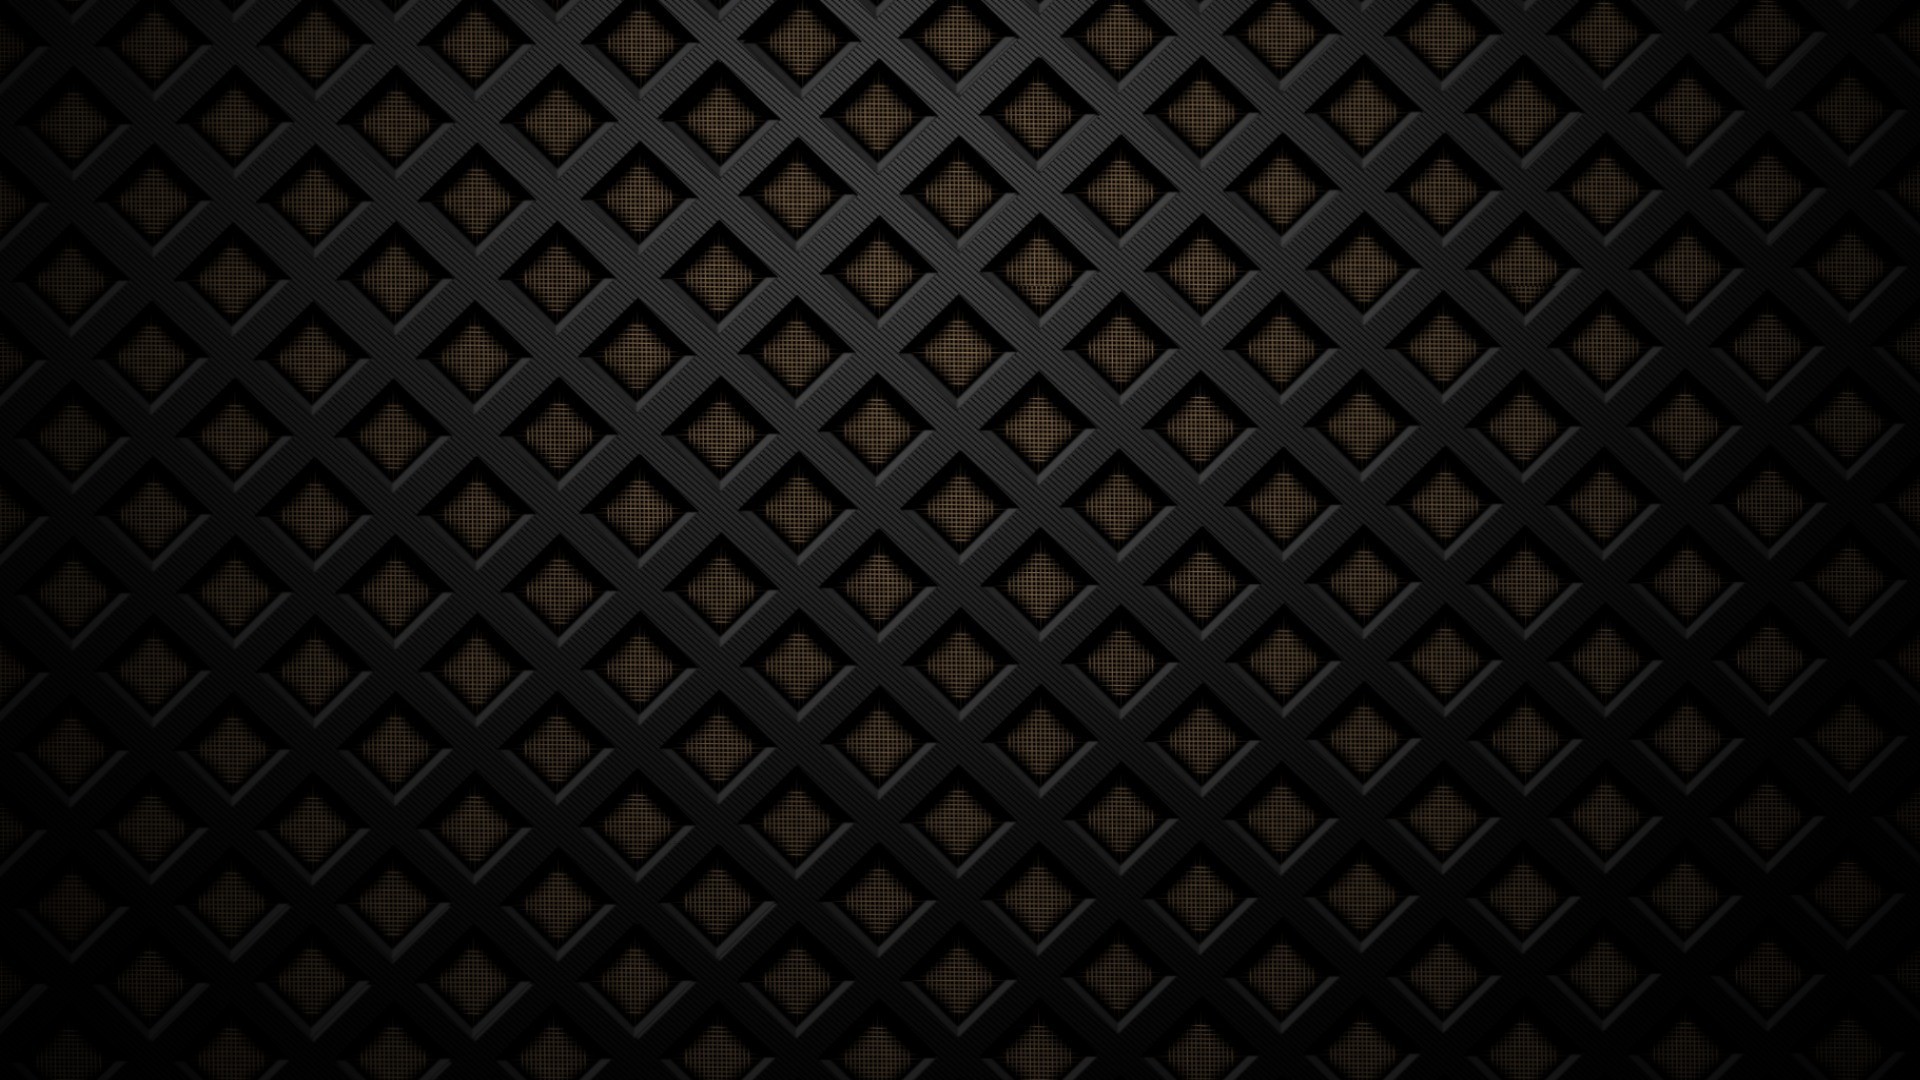 1920x1080 Black-Texture-Wallpapers-Pc.jpg (1920Ã1080) | Textures for Edits |  Pinterest | Wallpaper, Black wallpaper and 3d wallpaper